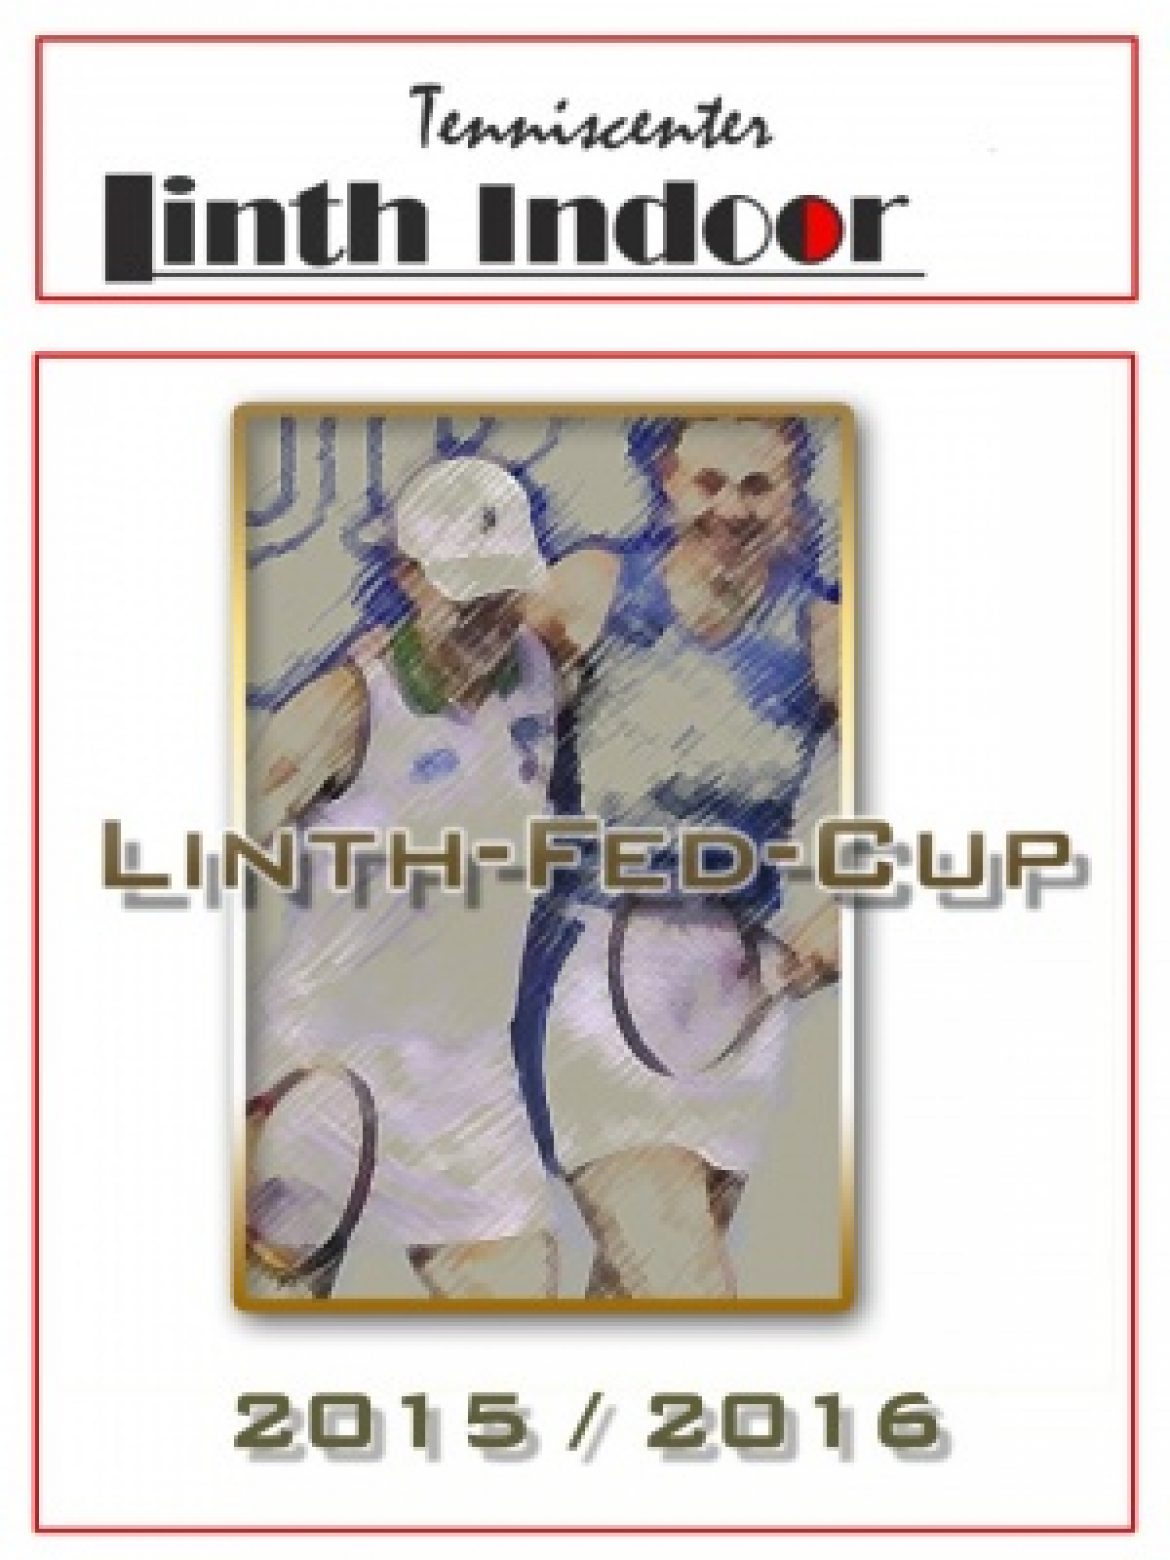 Ausschreibung Linth-Fed-Cup 2015 / 2016